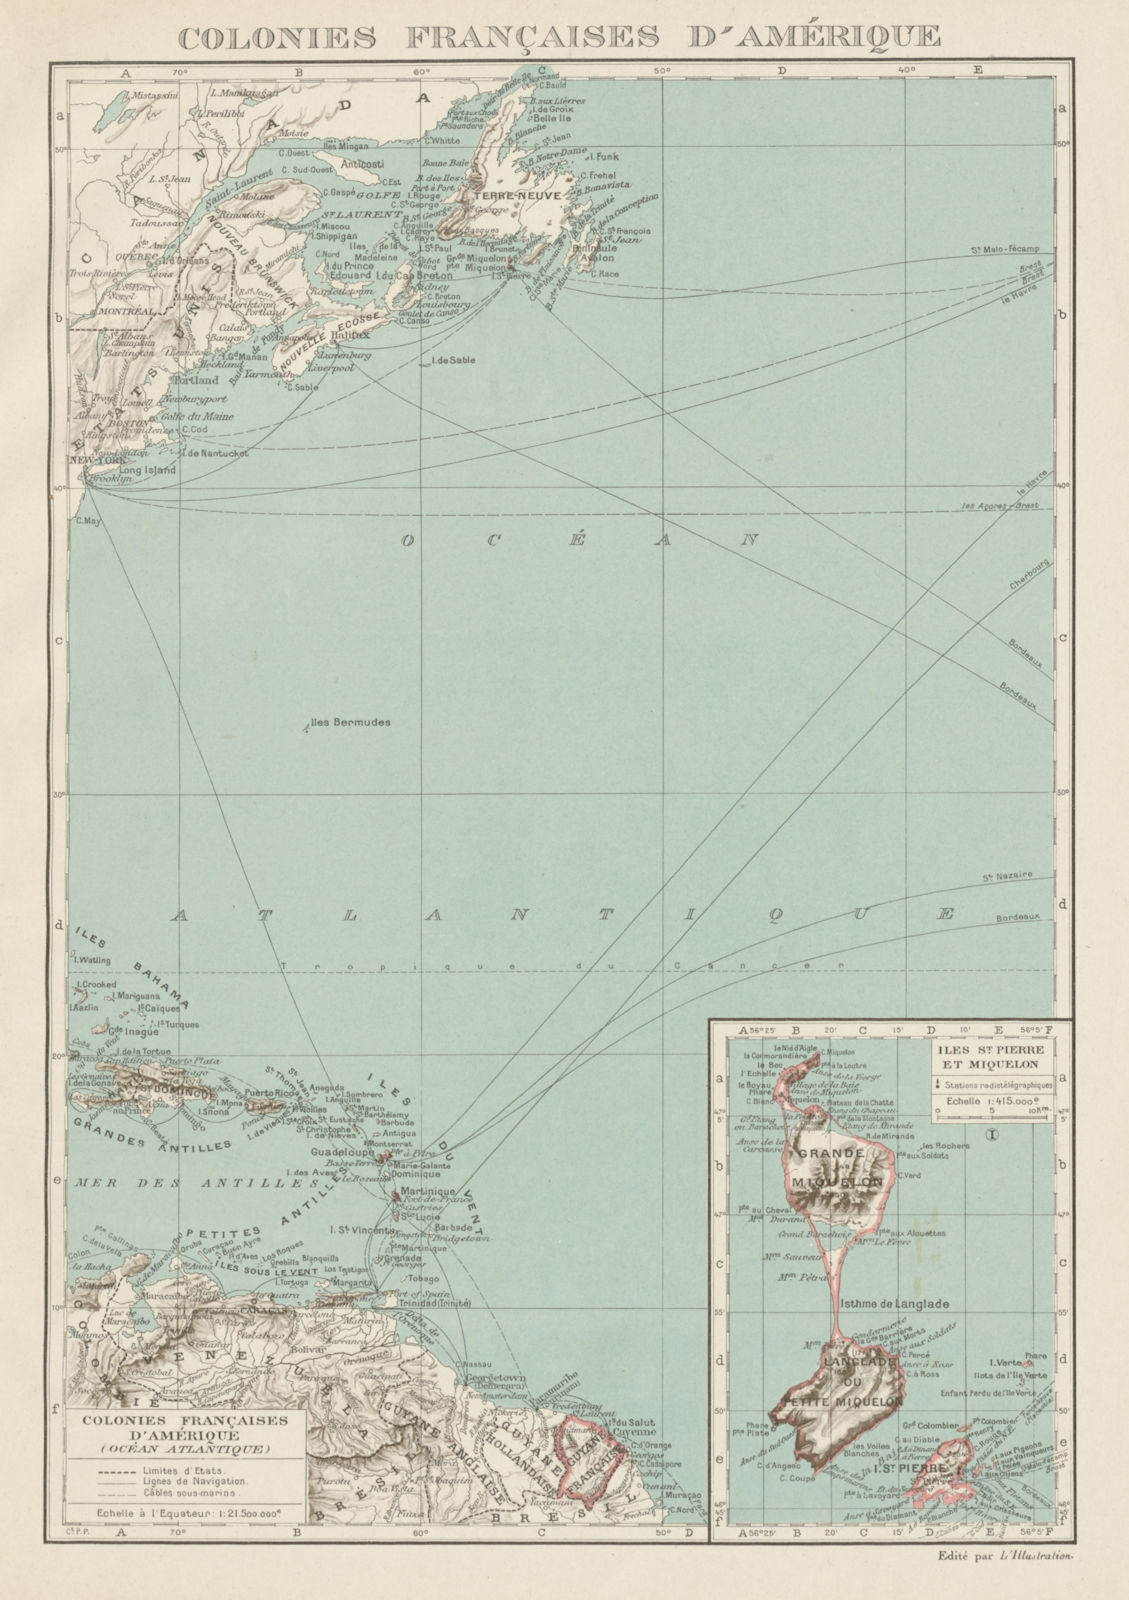 FRENCH AMERICAS. Colonies Françaises d' Amerique. St-Pierre et Miquelon 1929 map